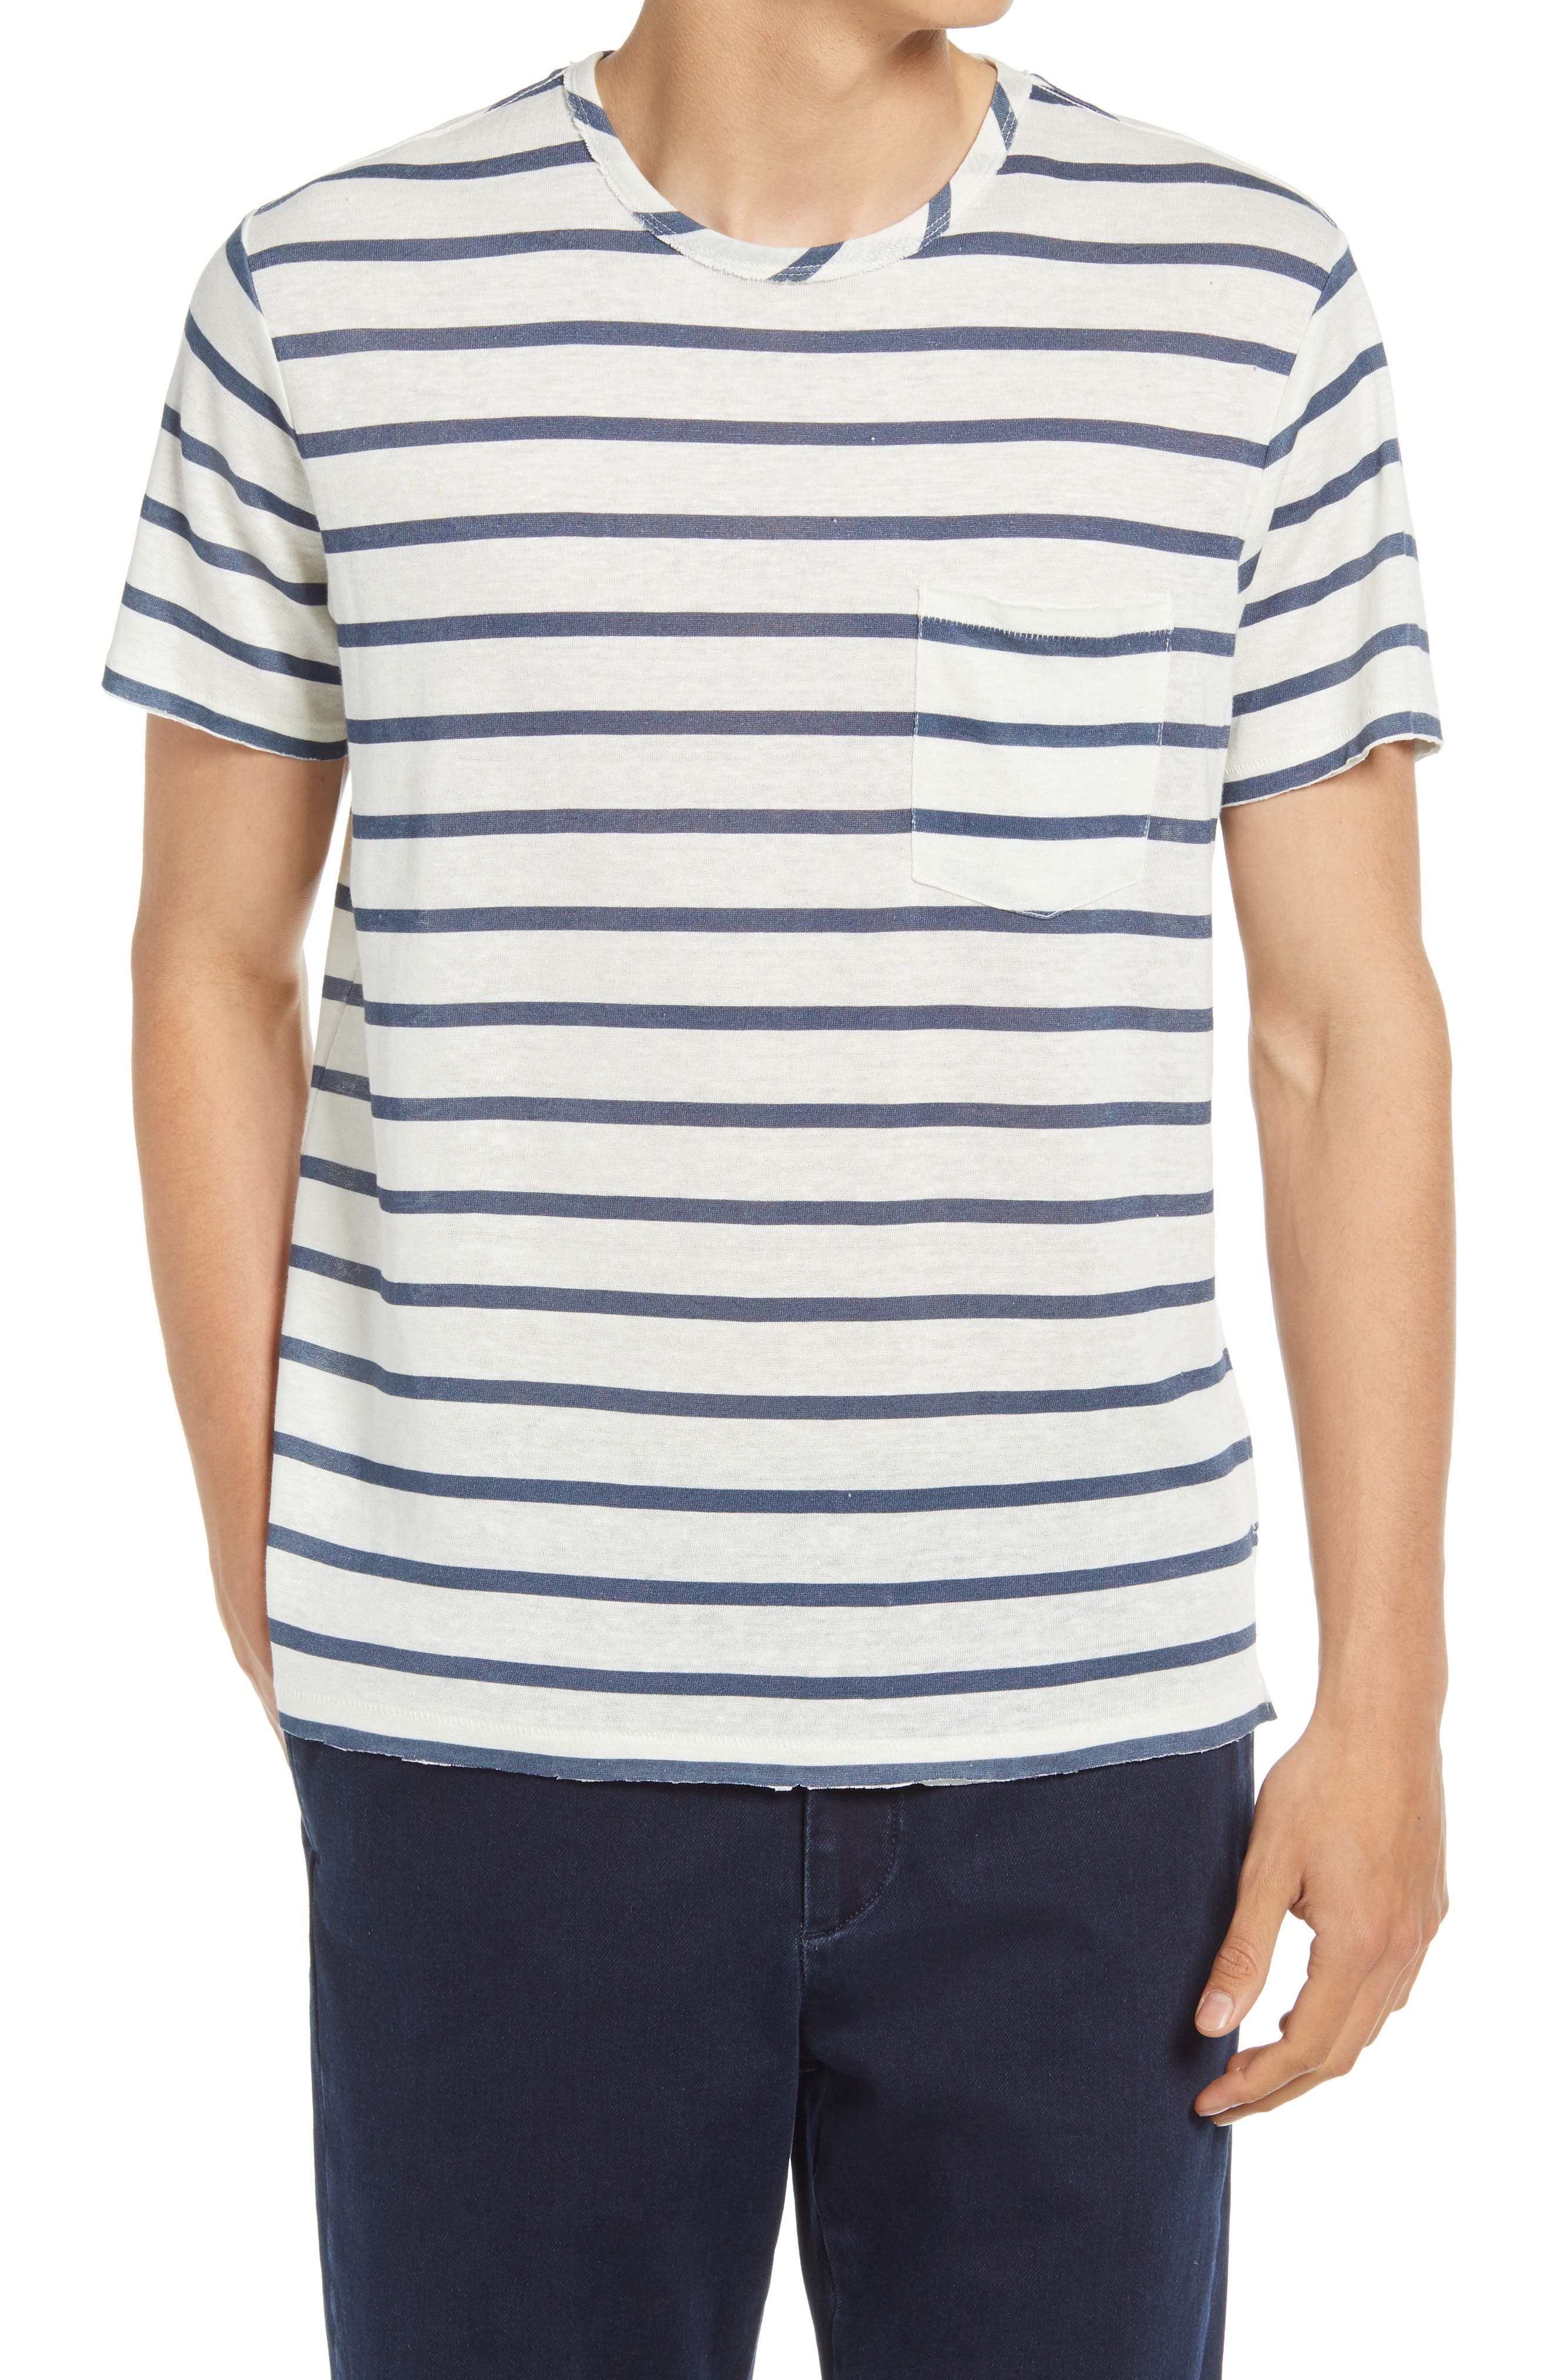 rag & bone Stripe Pocket T-Shirt in Ivory Blue at Nordstrom, Size Large